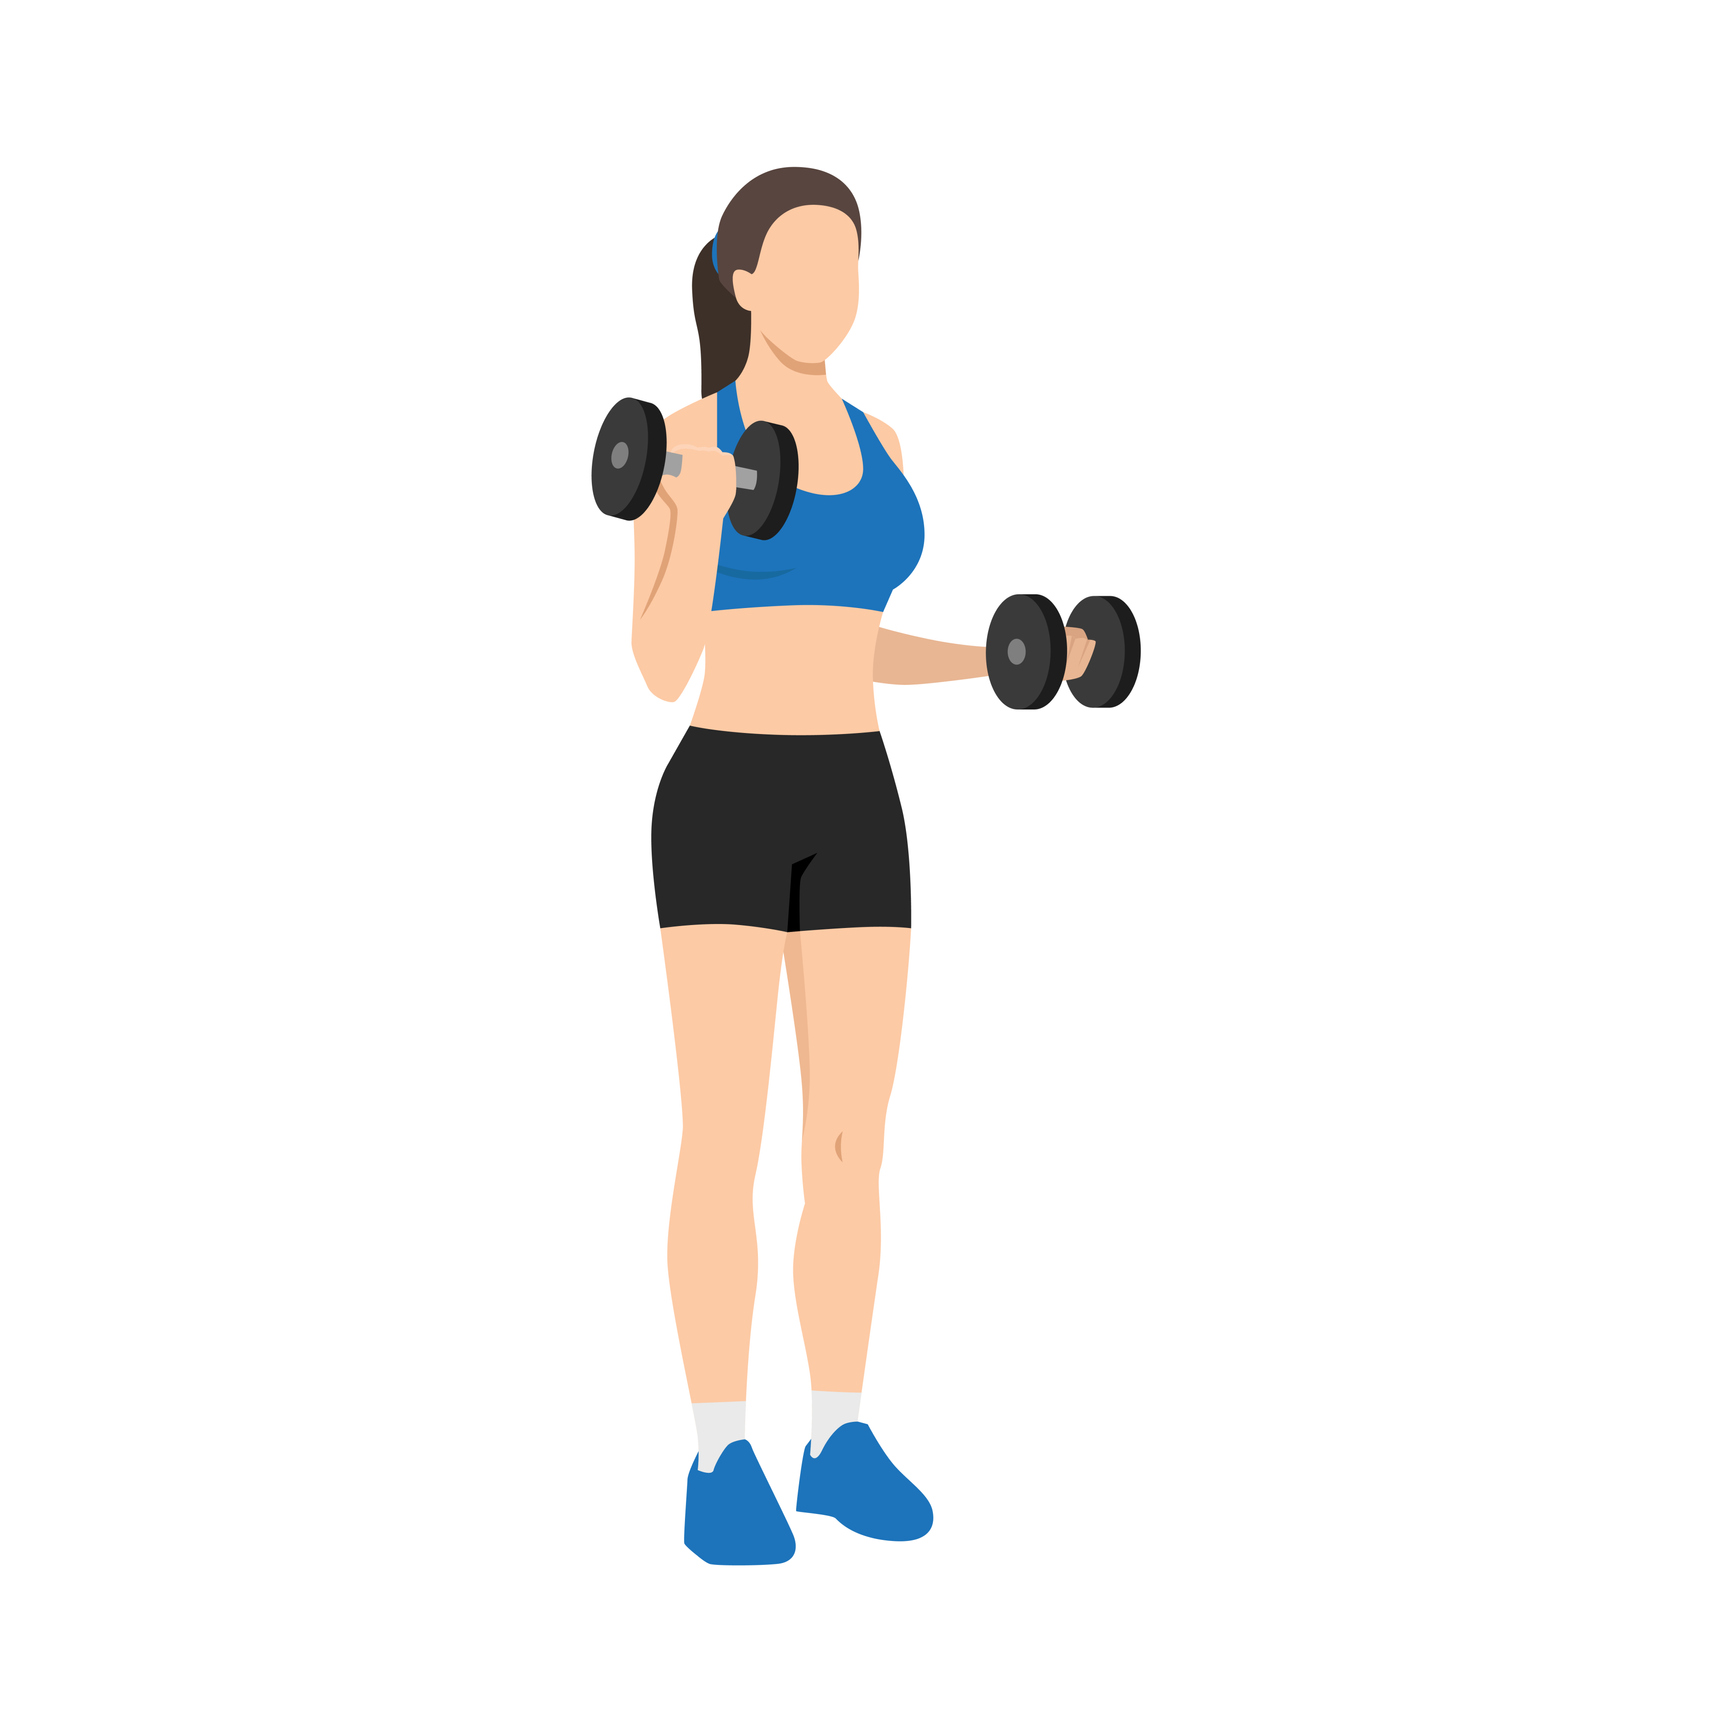 Drop-set para treino de bíceps, como fazer corretamente? - Treino